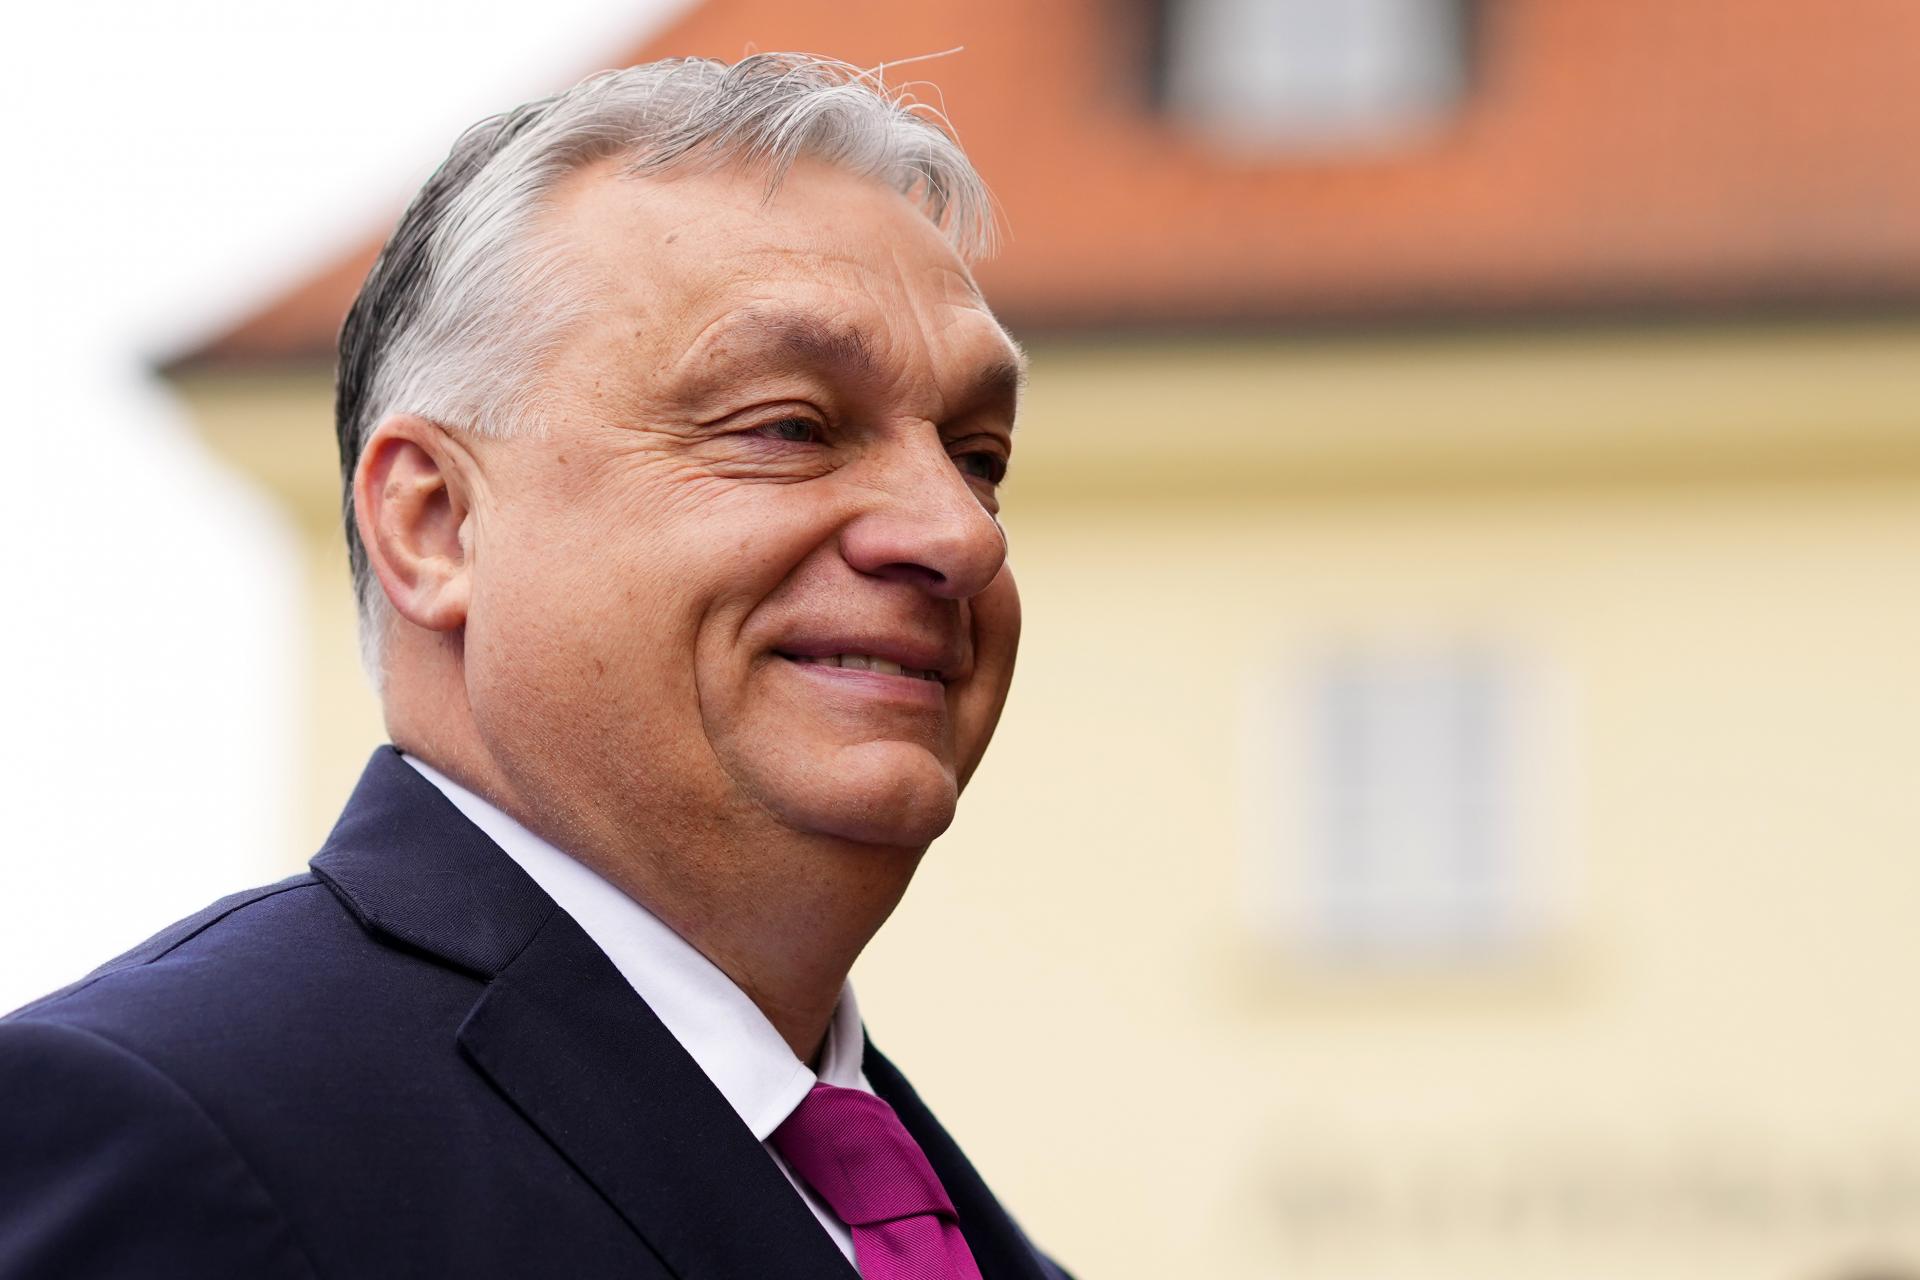 Orbán sa v piatok stretne s Trumpom na Floride, Szijjártó zas pôjde koncom mesiaca do Ruska